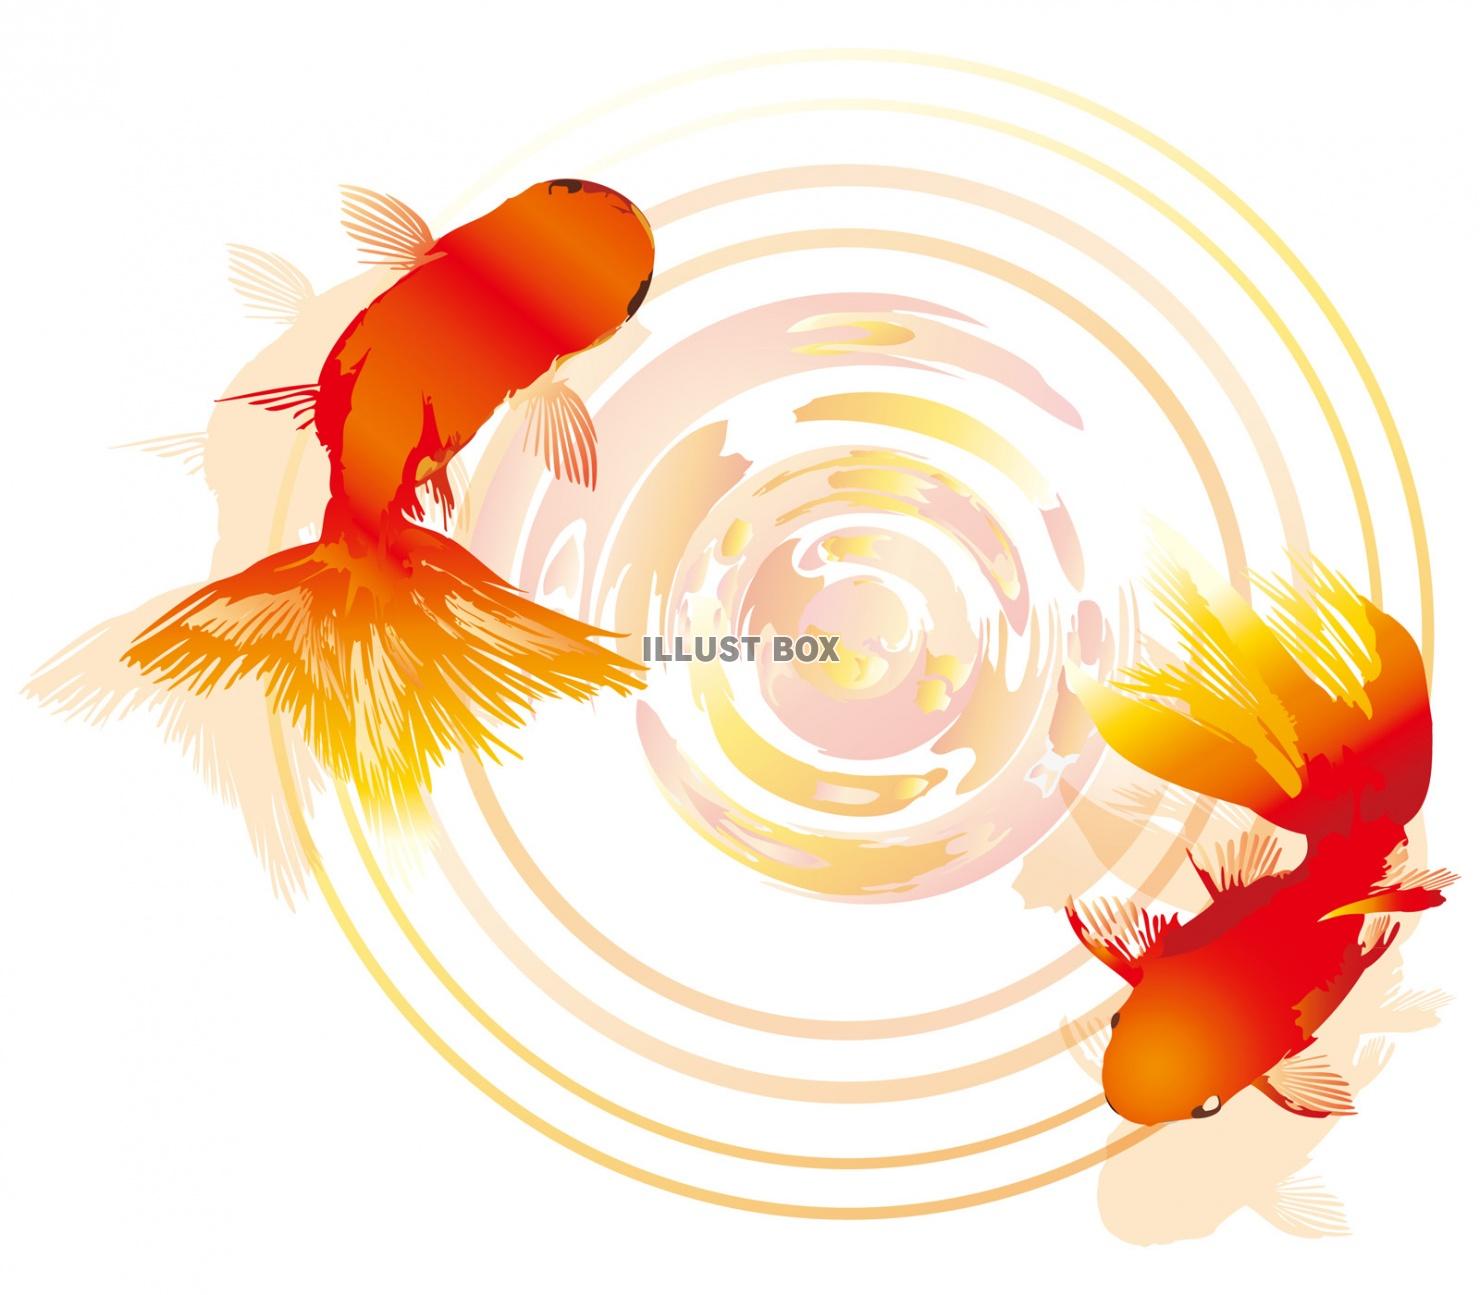 無料イラスト 金魚水面秋祭り夏祭り和風縁日夕方暖色赤オレンジ動物魚生き物無